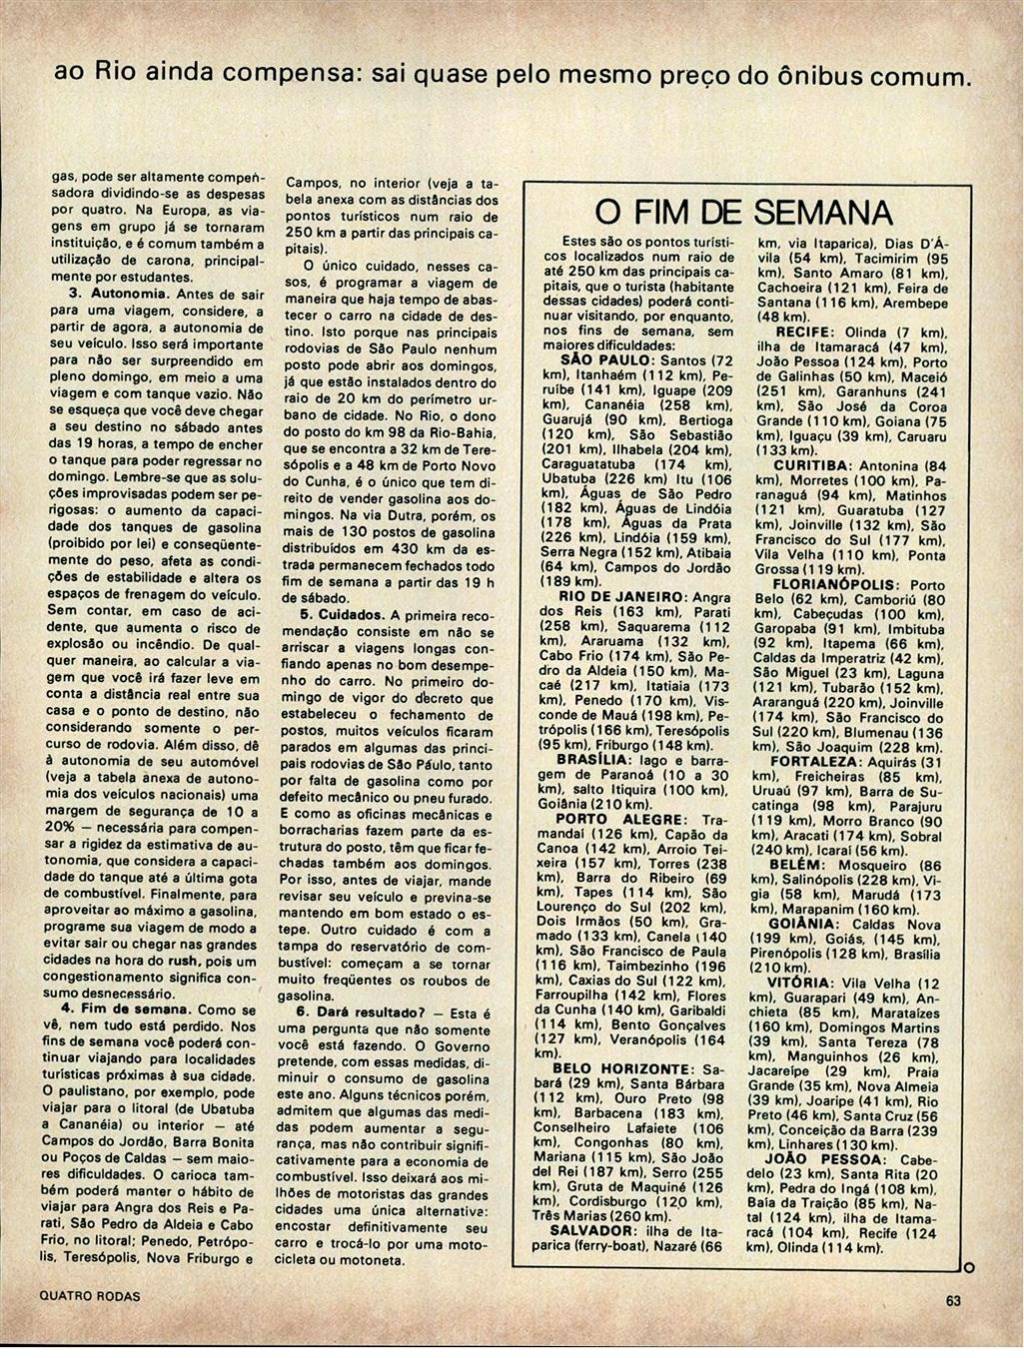 Quatro Rodas 1977 ed-0199_pag-063